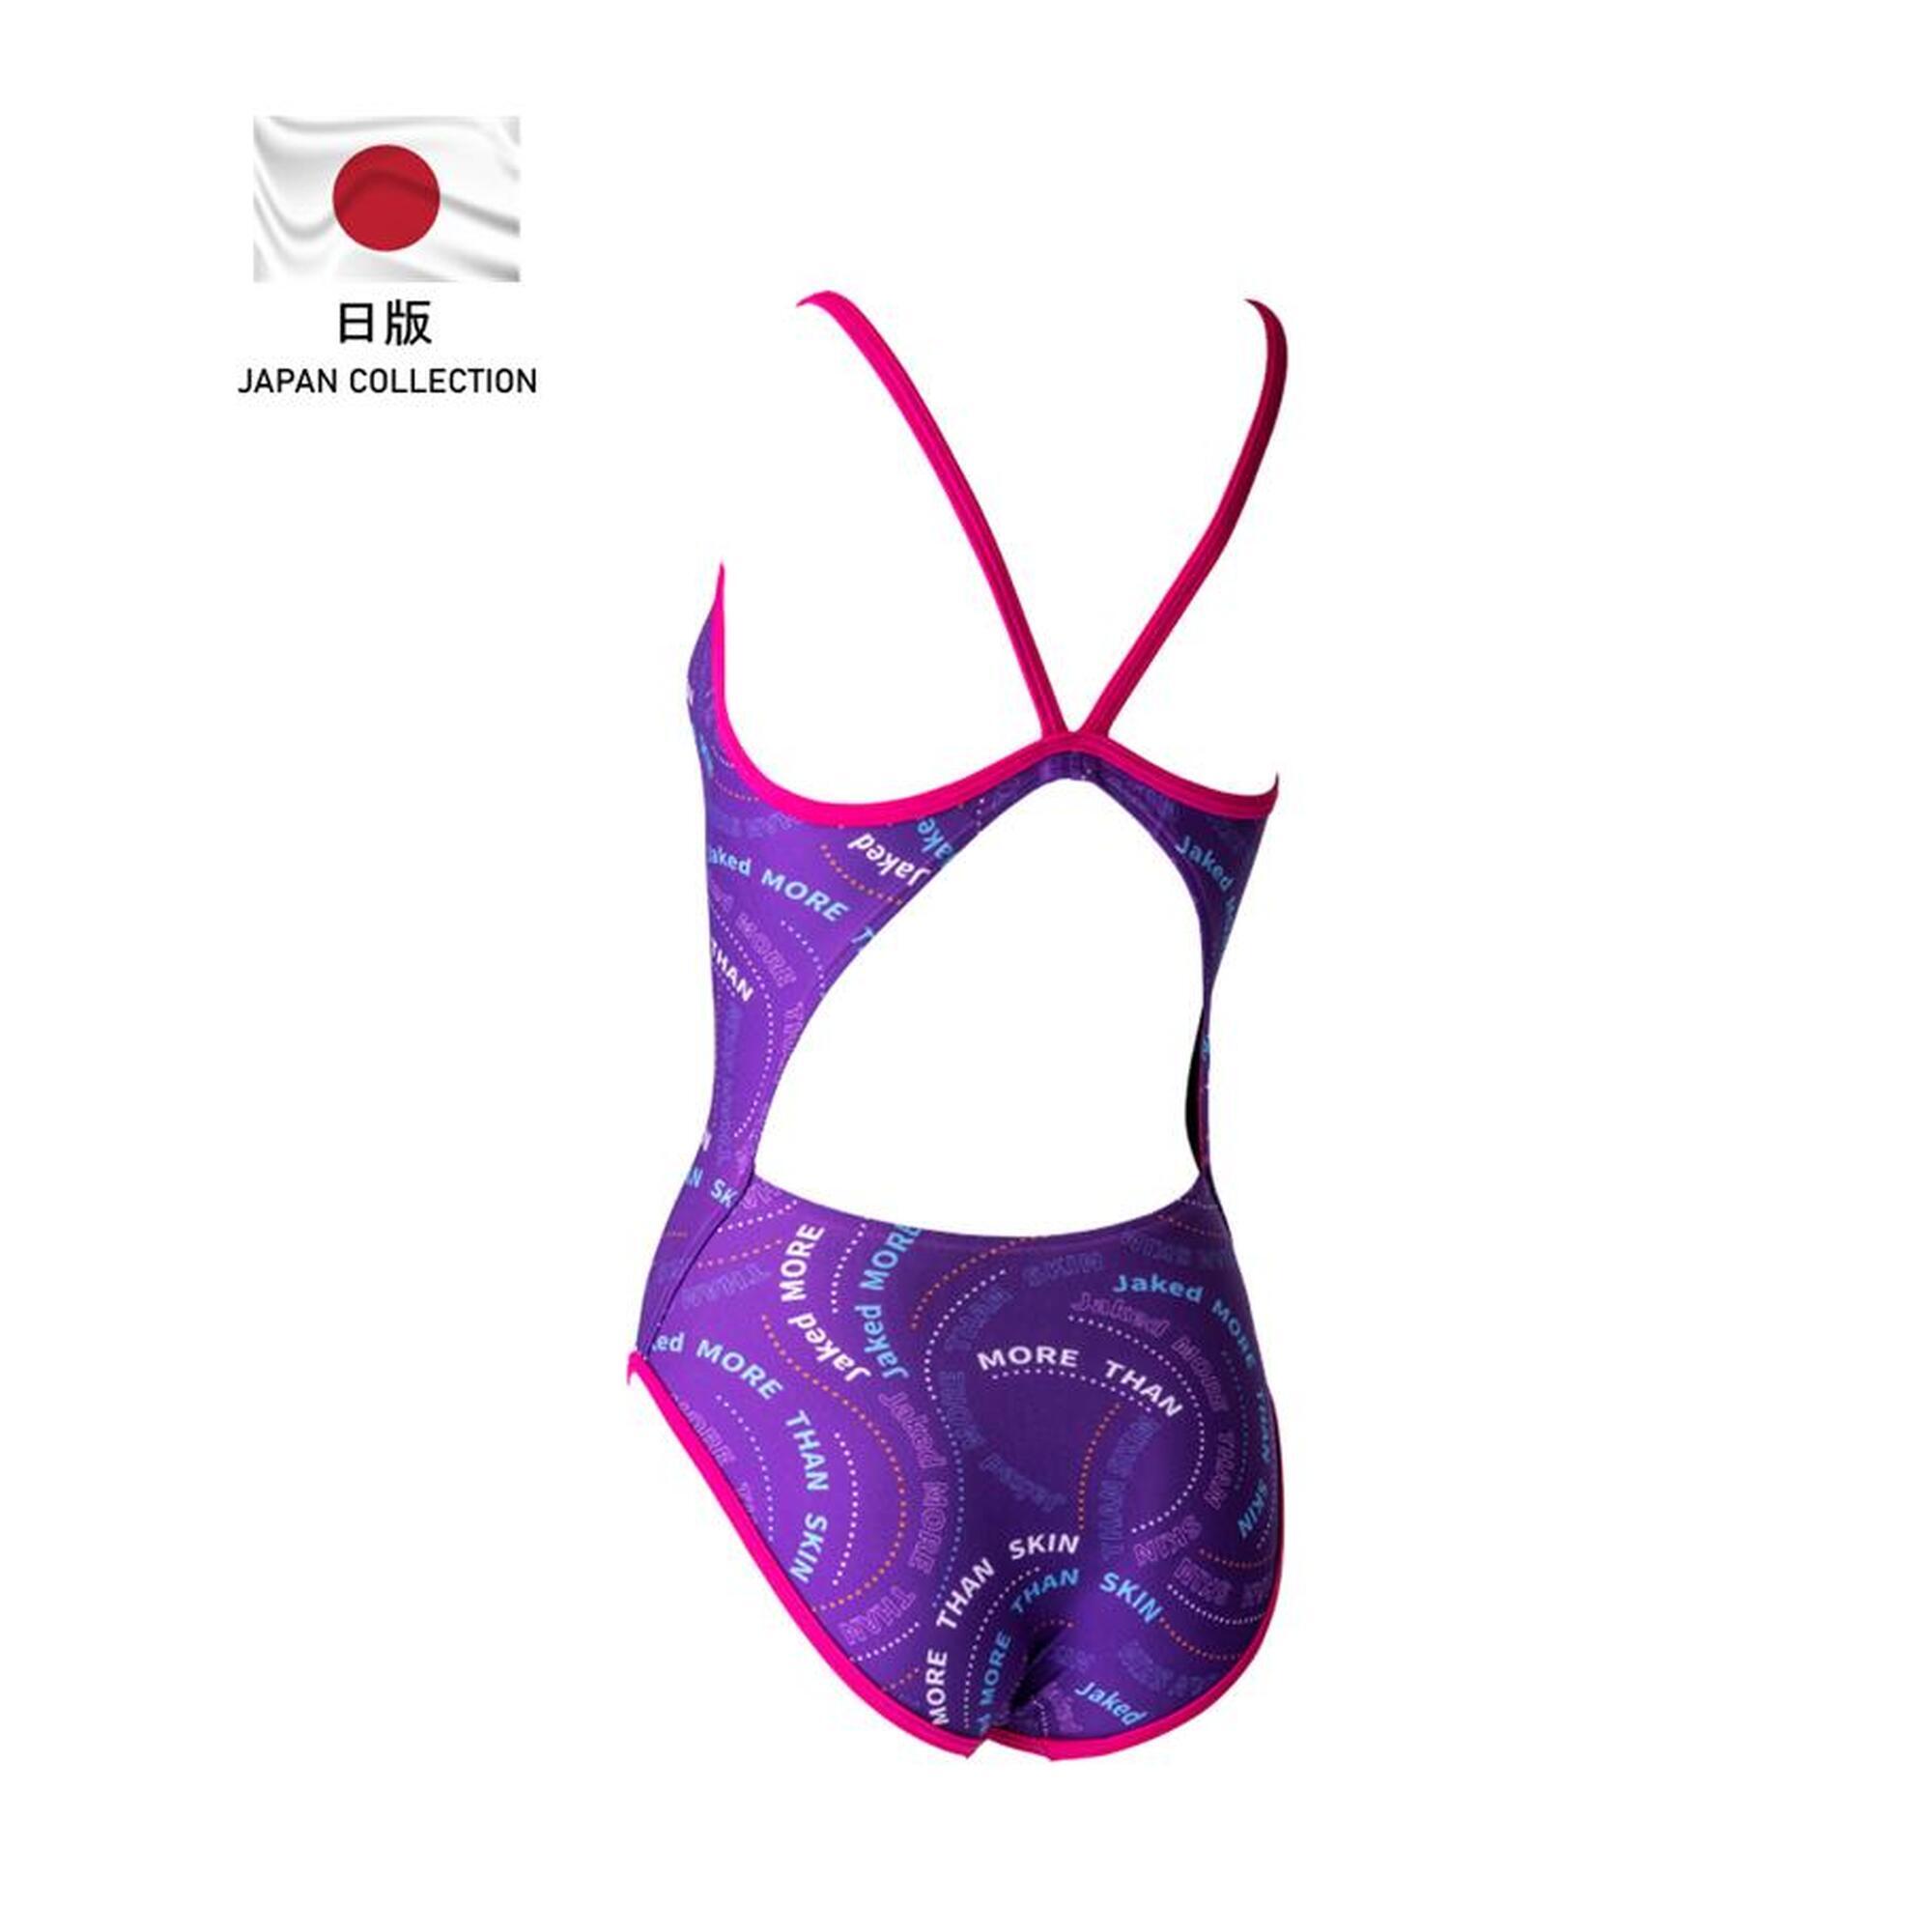 日版 578 女士訓練連身泳衣 - 紫色/粉紅色